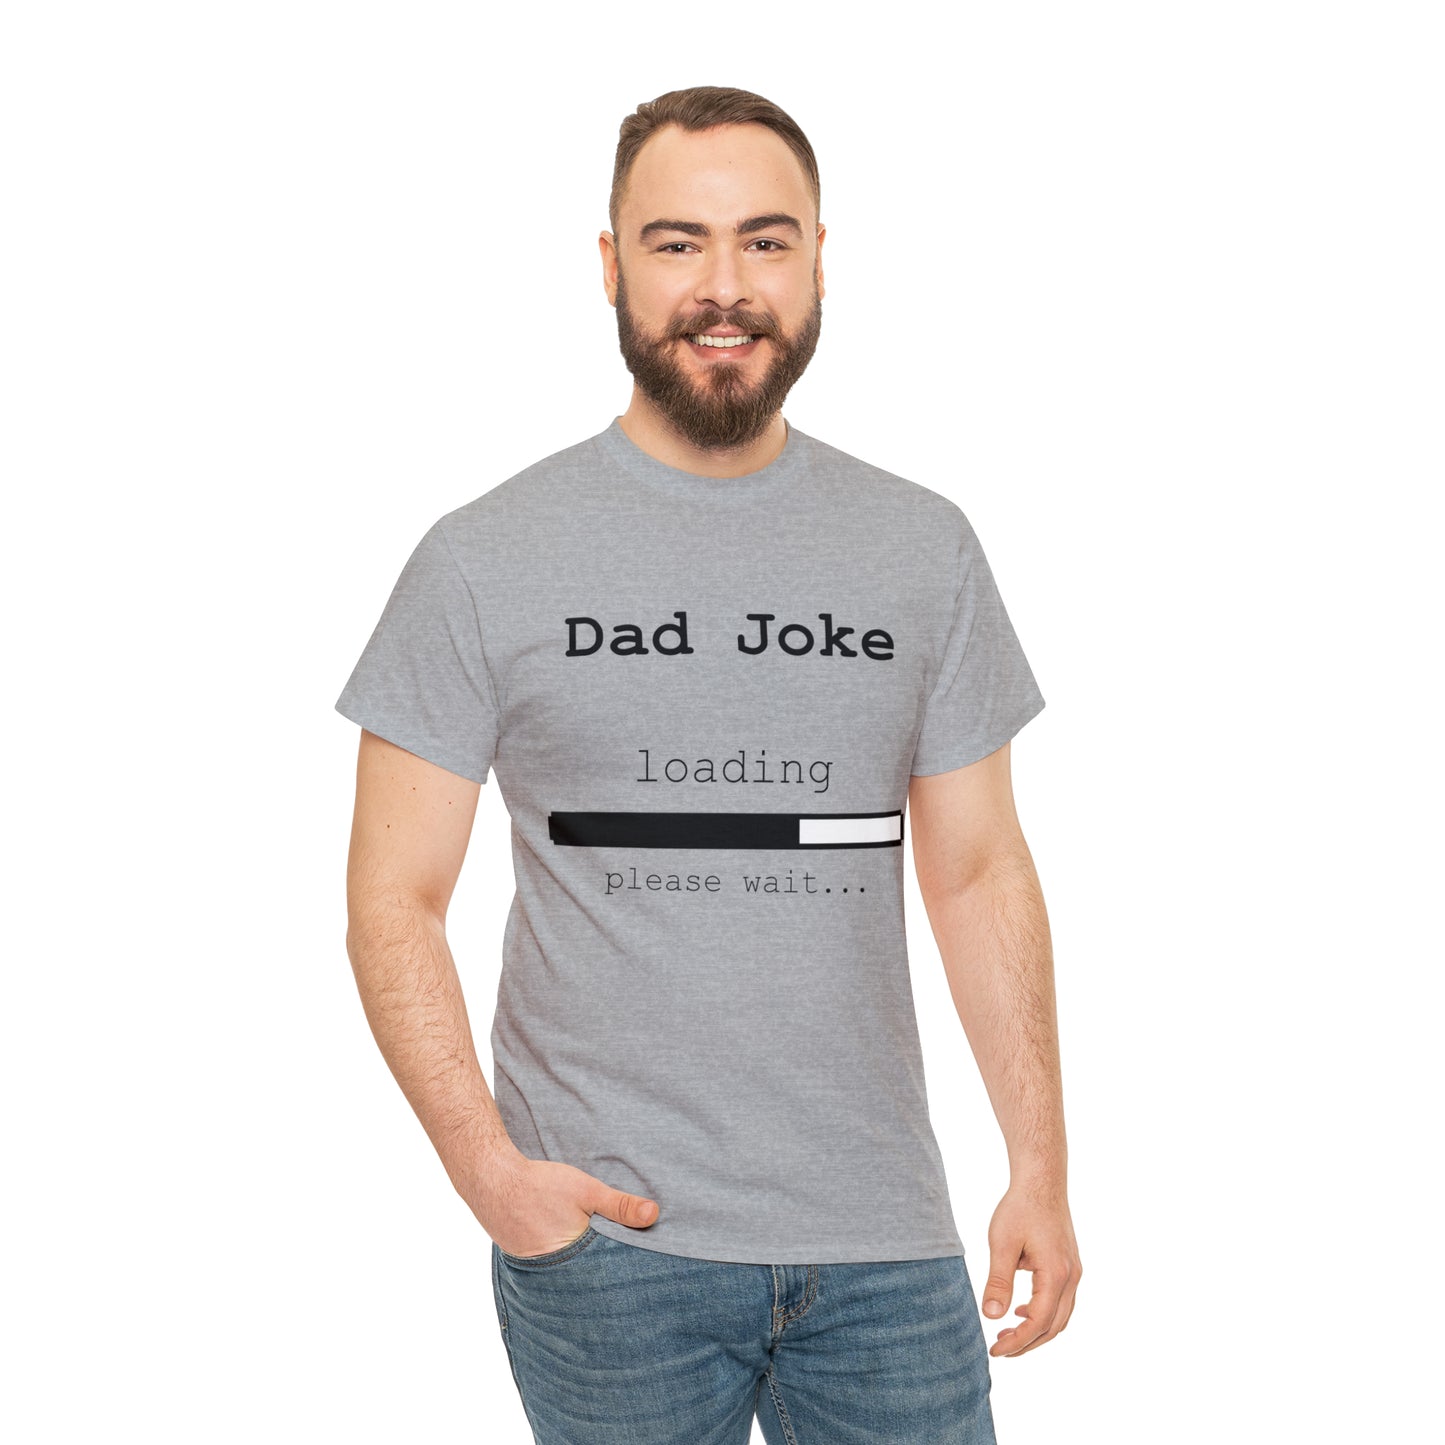 Dad Joke Loading... Please Wait T-shirt